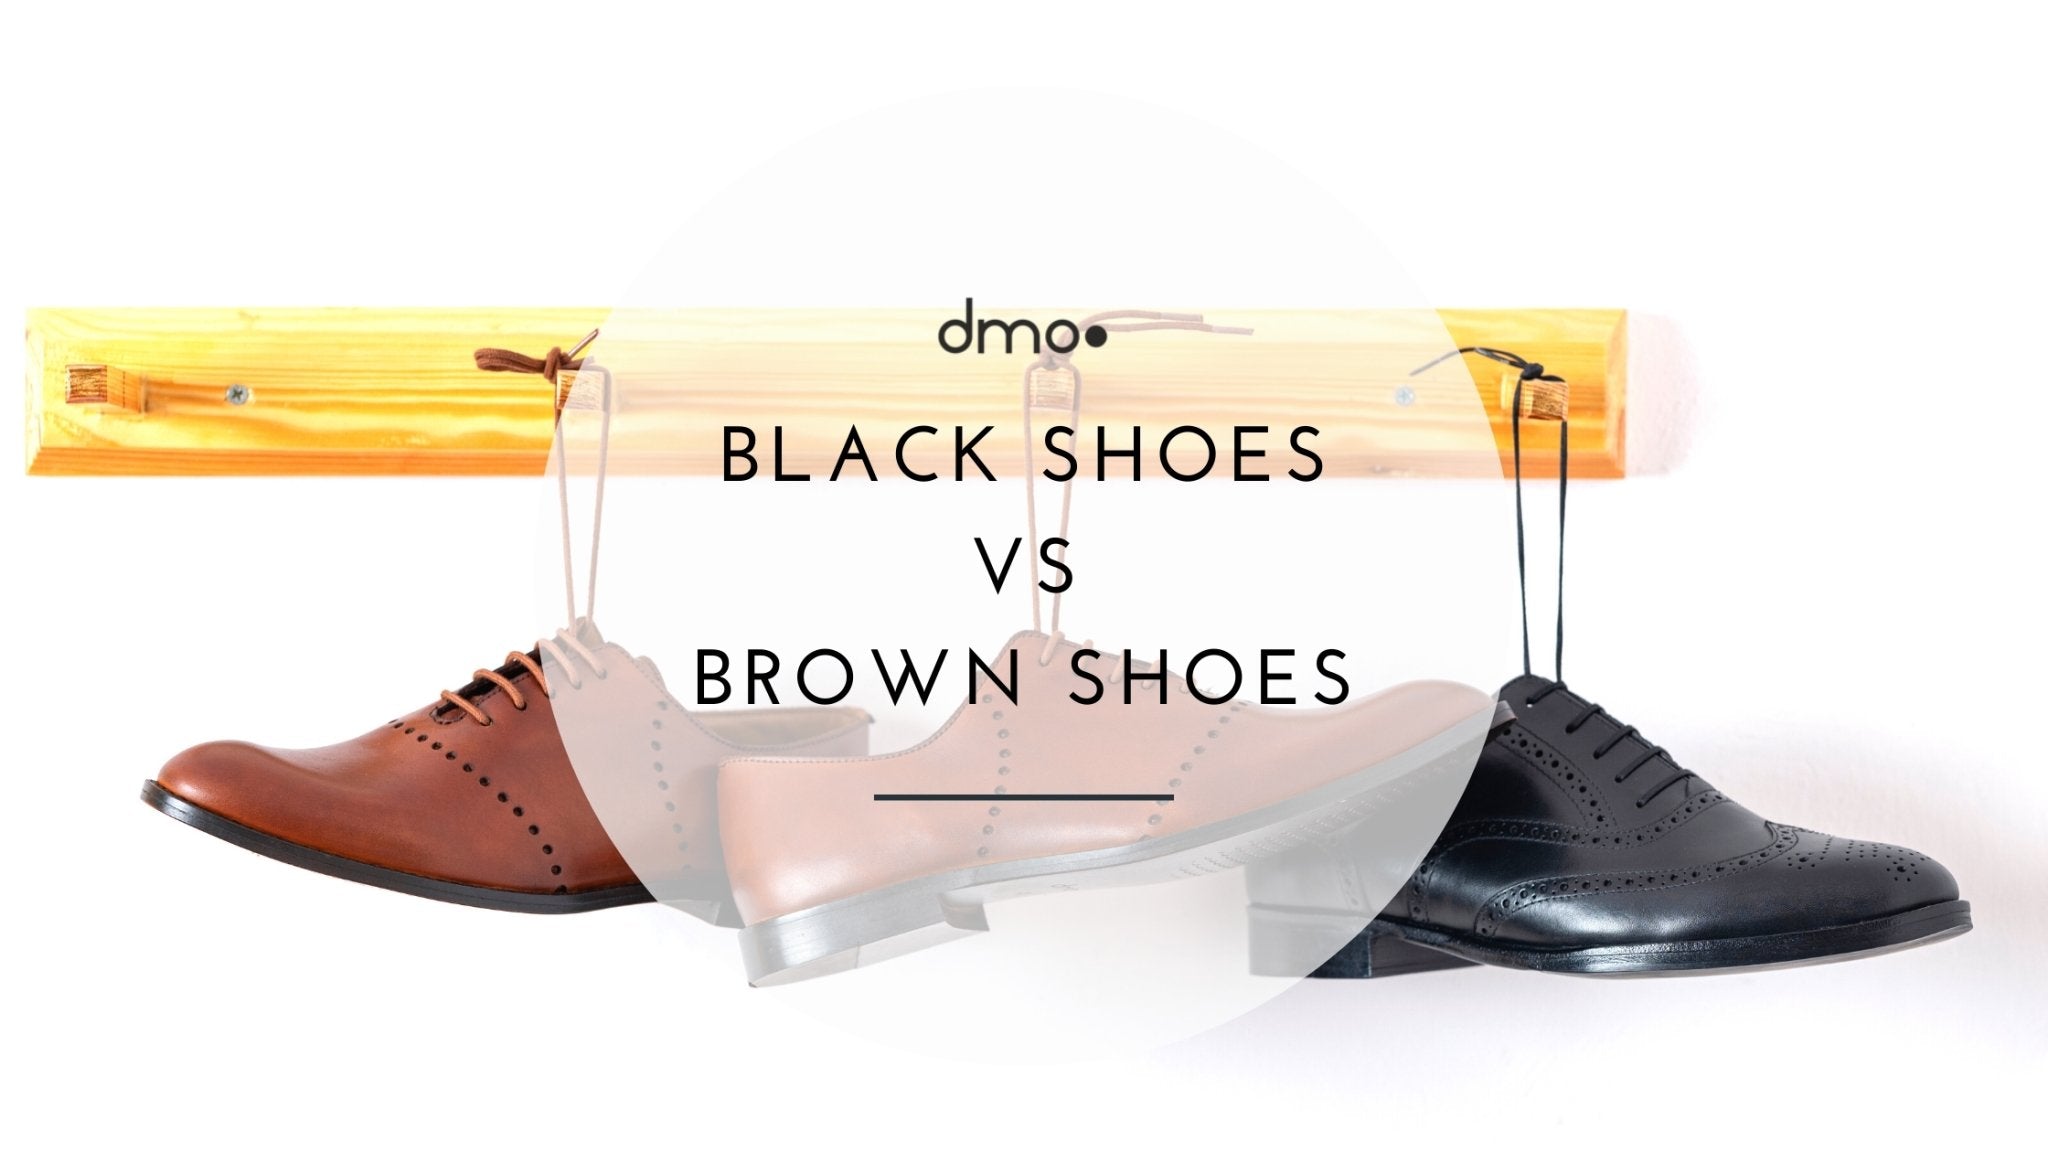 Black Shoes vs Brown Shoes - dmodot Shoes